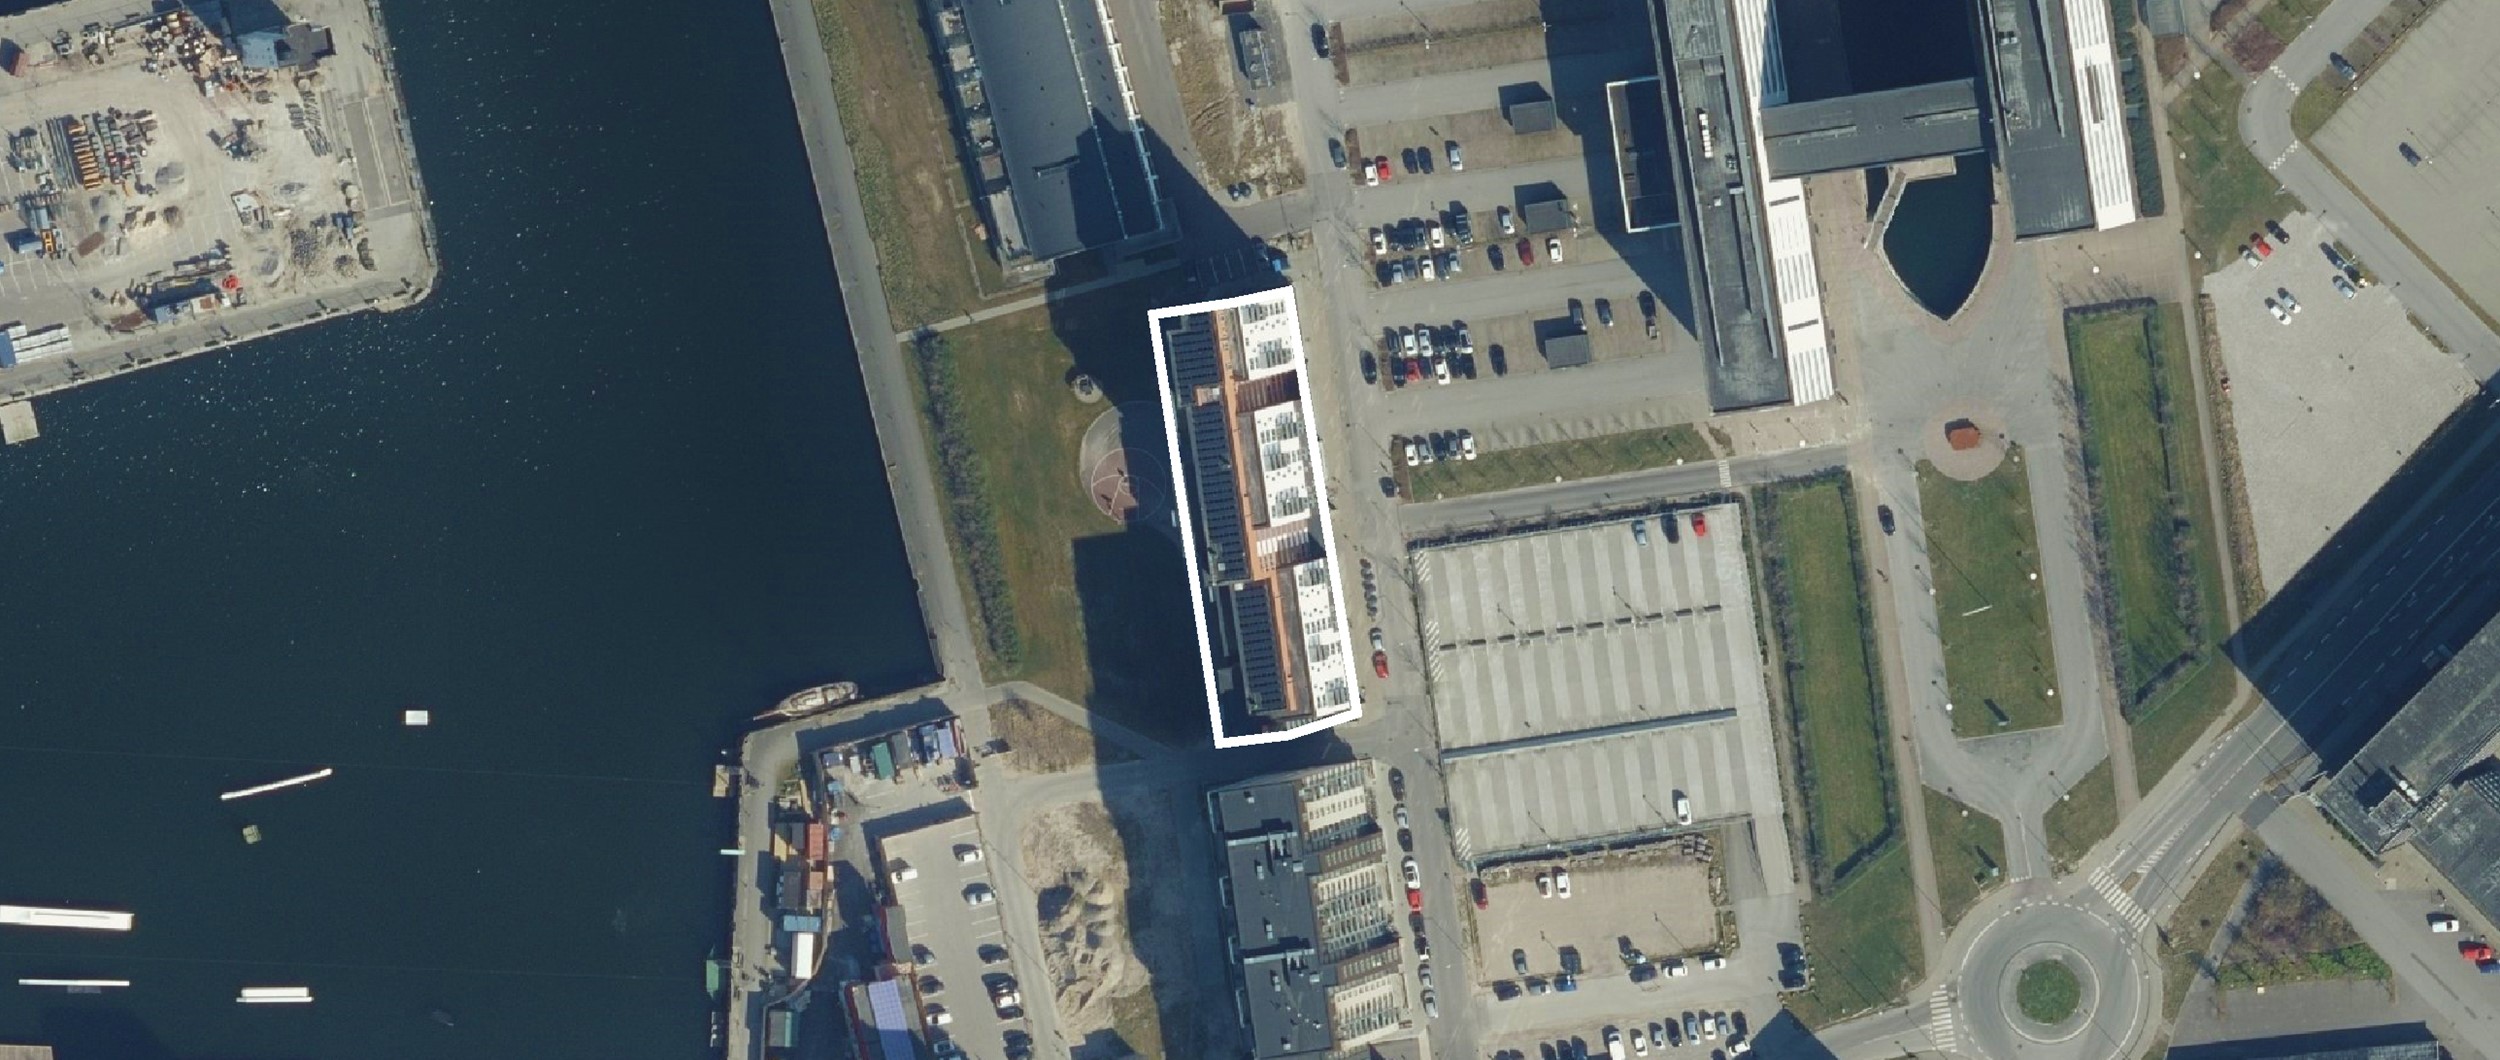 På en tidligere værftsgrund på Aalborg Østhavn står et større nybyggeri færdigt. Bygningen indeholder 166 ungdomsboliger, som alle har en fantastisk udsigt over Limfjorden.